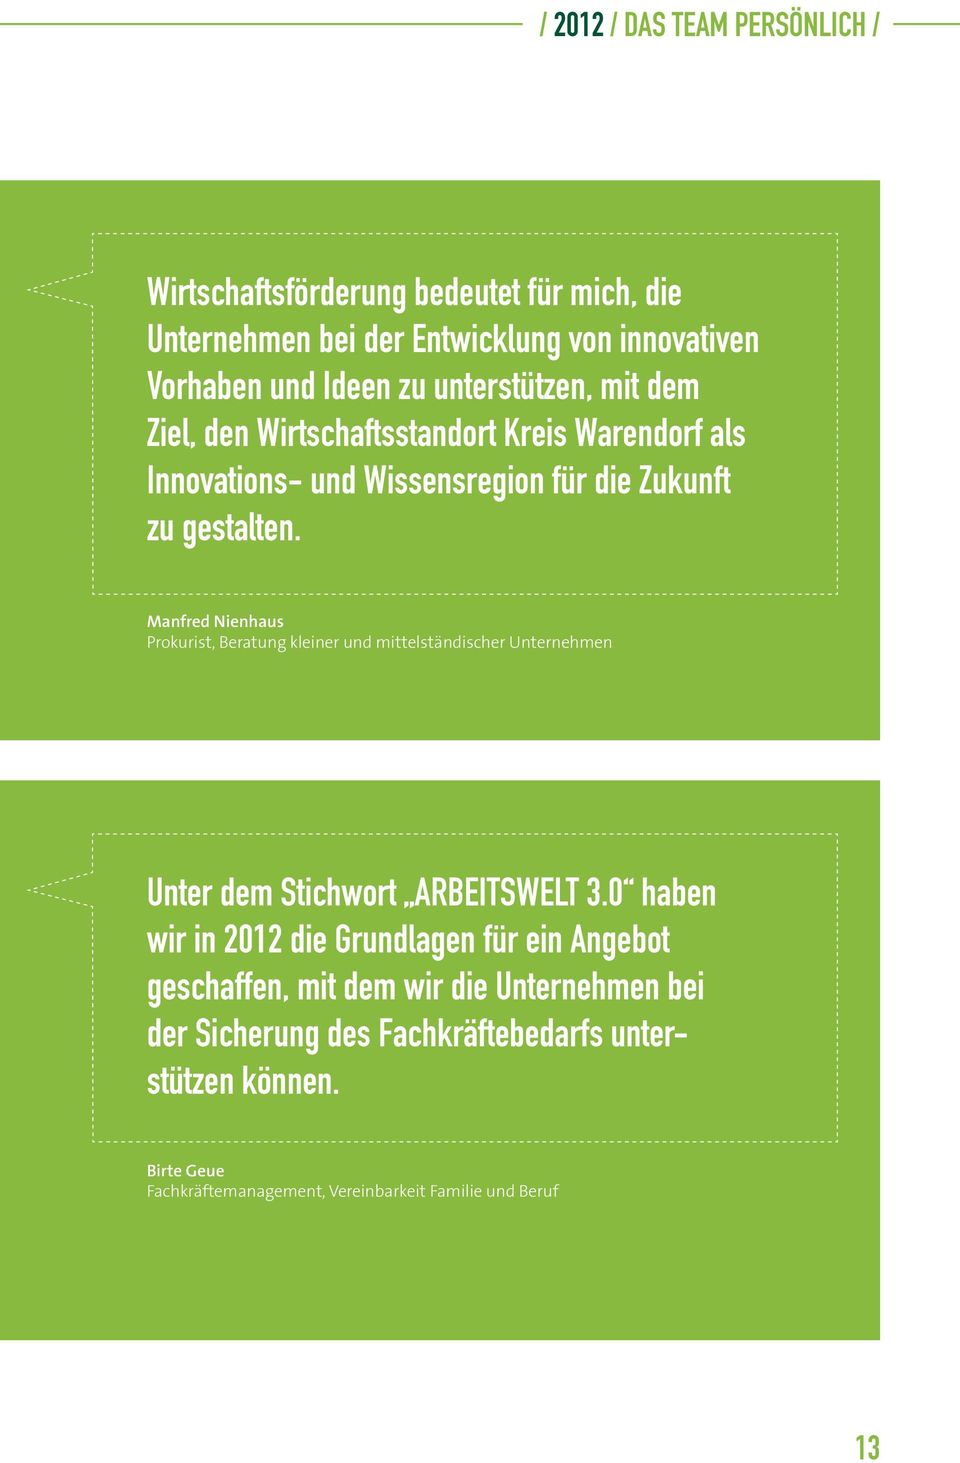 Manfred Nienhaus Prokurist, Beratung kleiner und mittelständischer Unternehmen Unter dem Stichwort ARBEITSWELT 3.